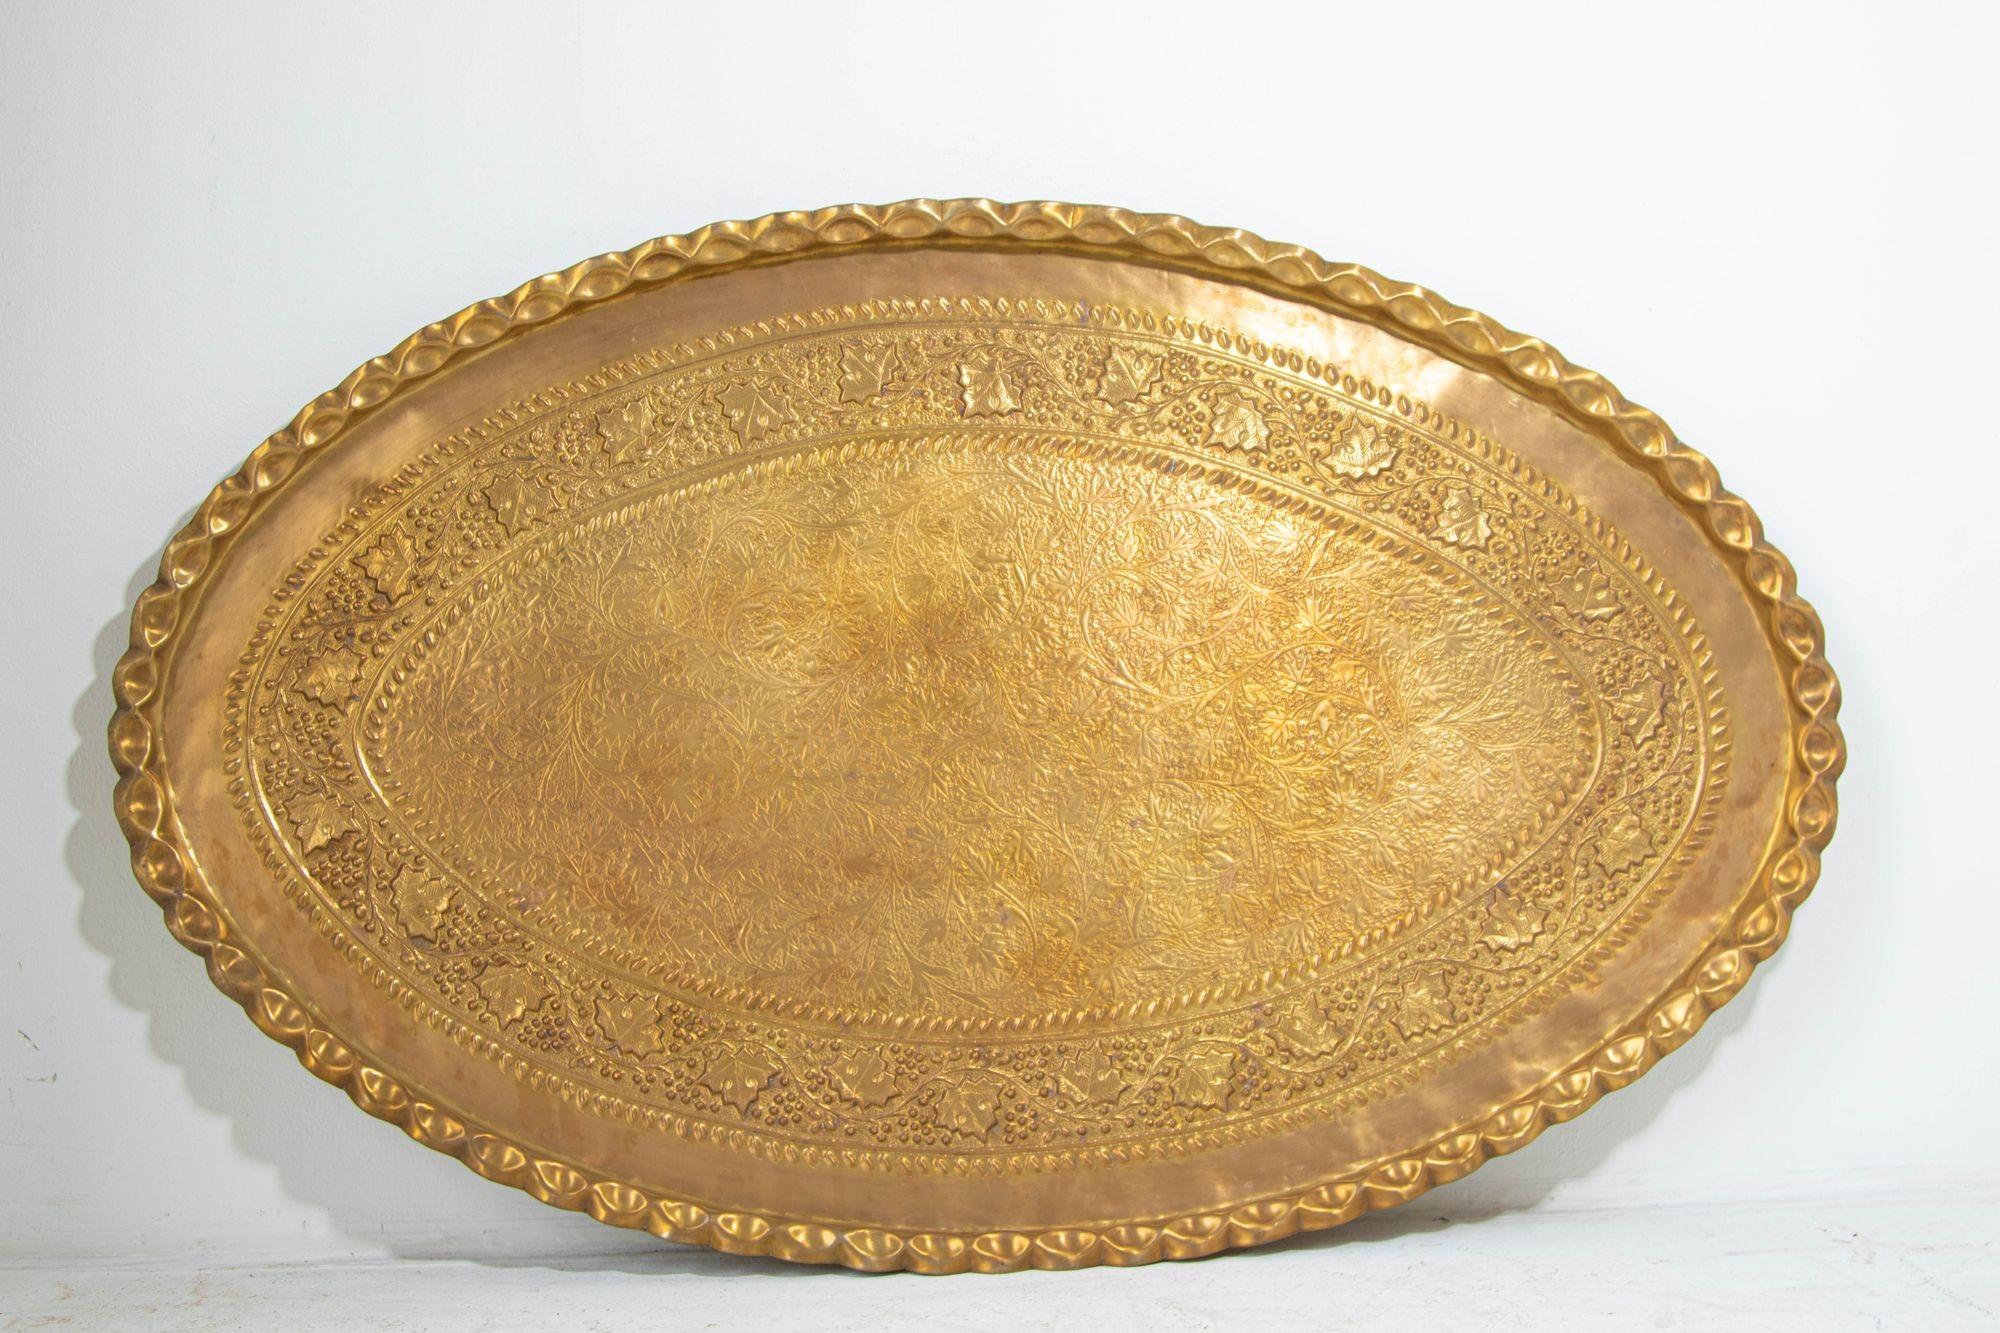 Große massive Mid-Century Messing marokkanische Oval Messing Tablett.
Handgearbeitetes, geätztes, sehr großes marokkanisches Tablett aus poliertem Messing.
Dieses ovale Messingtablett ist das größte, das wir je gesehen haben, es misst 53-1/2 